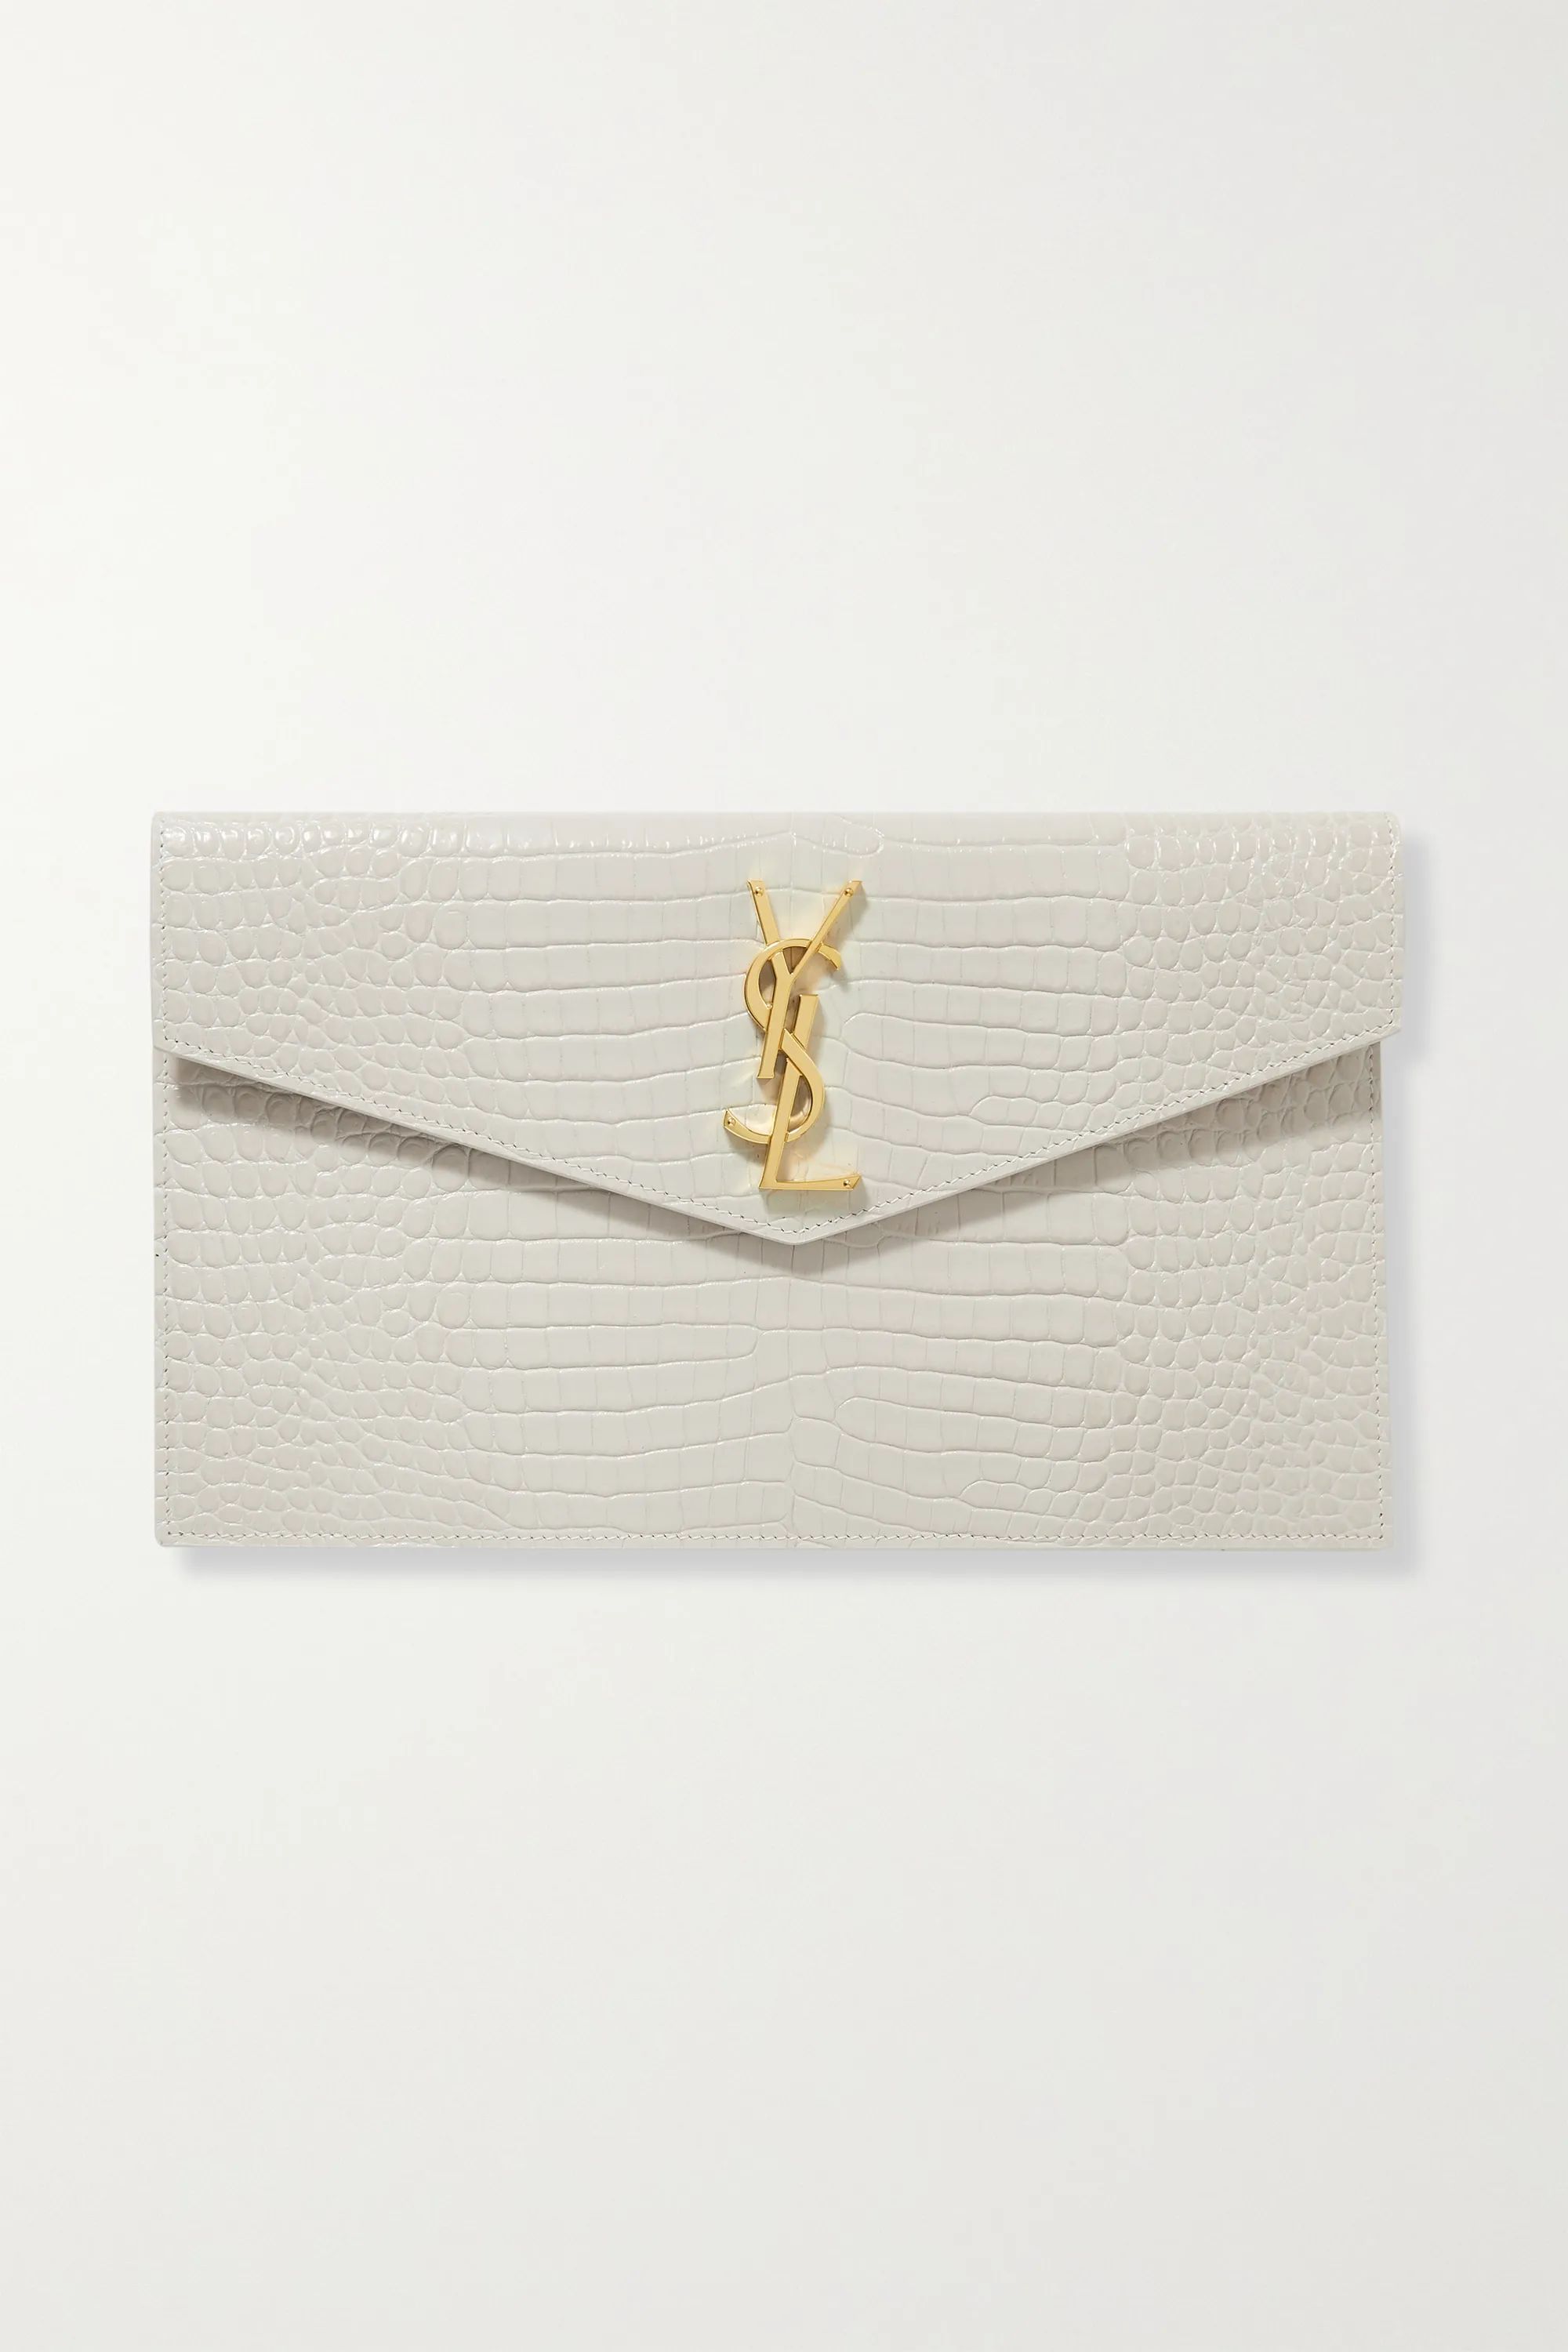 Off-white Uptown croc-effect leather pouch | SAINT LAURENT | NET-A-PORTER | NET-A-PORTER (US)